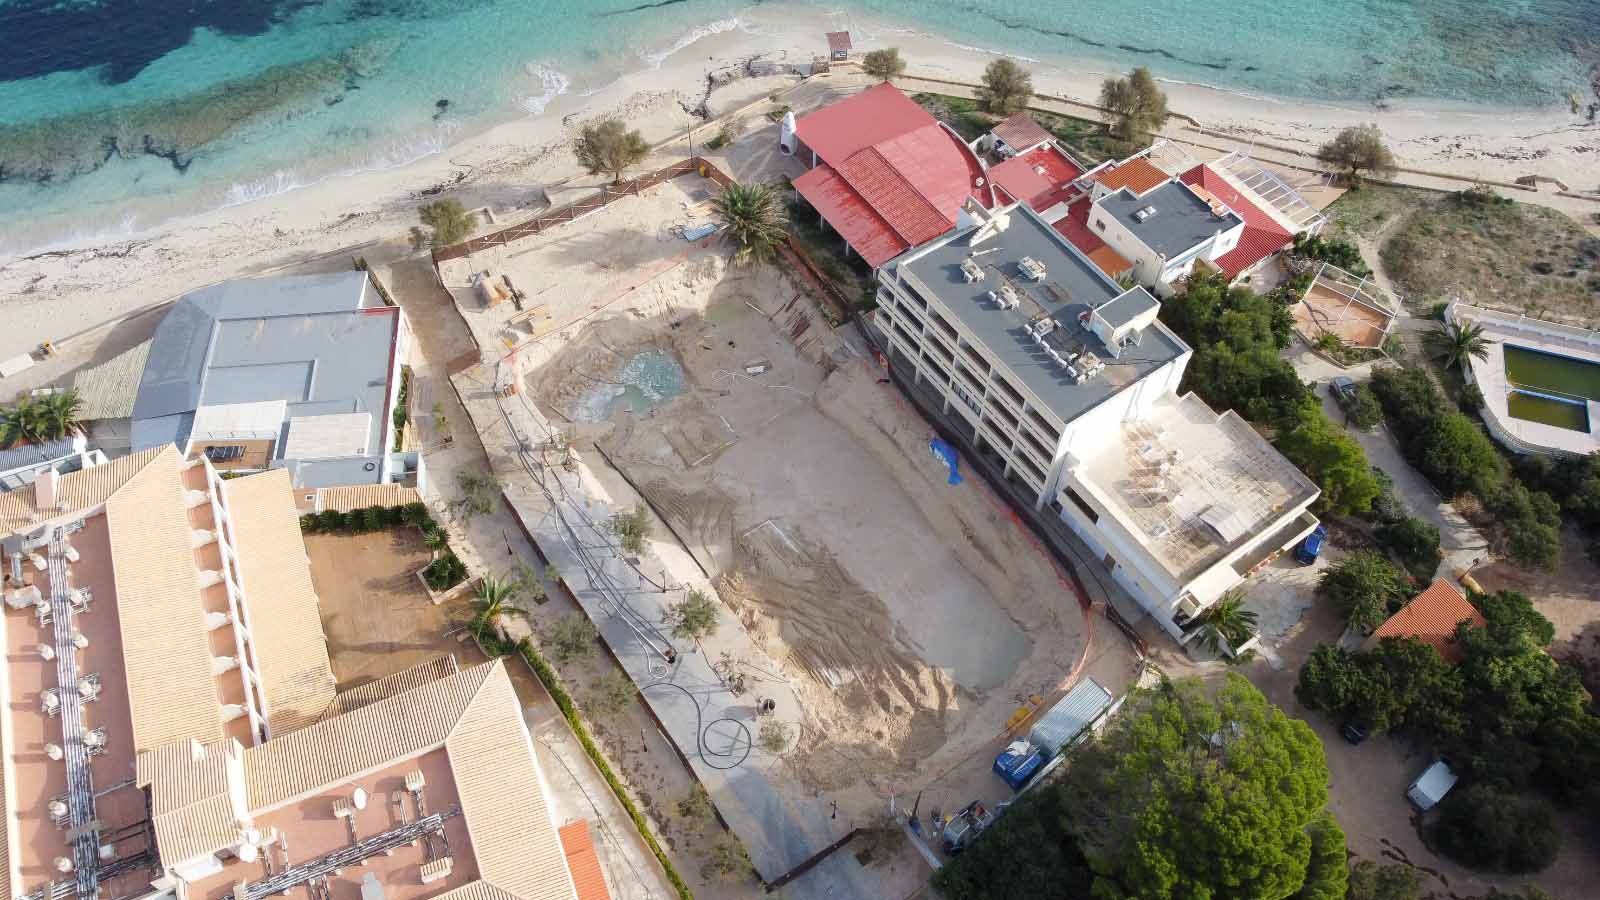 Paralizada la obra de un hotel de lujo en Formentera por incumplir las medidas de seguridad